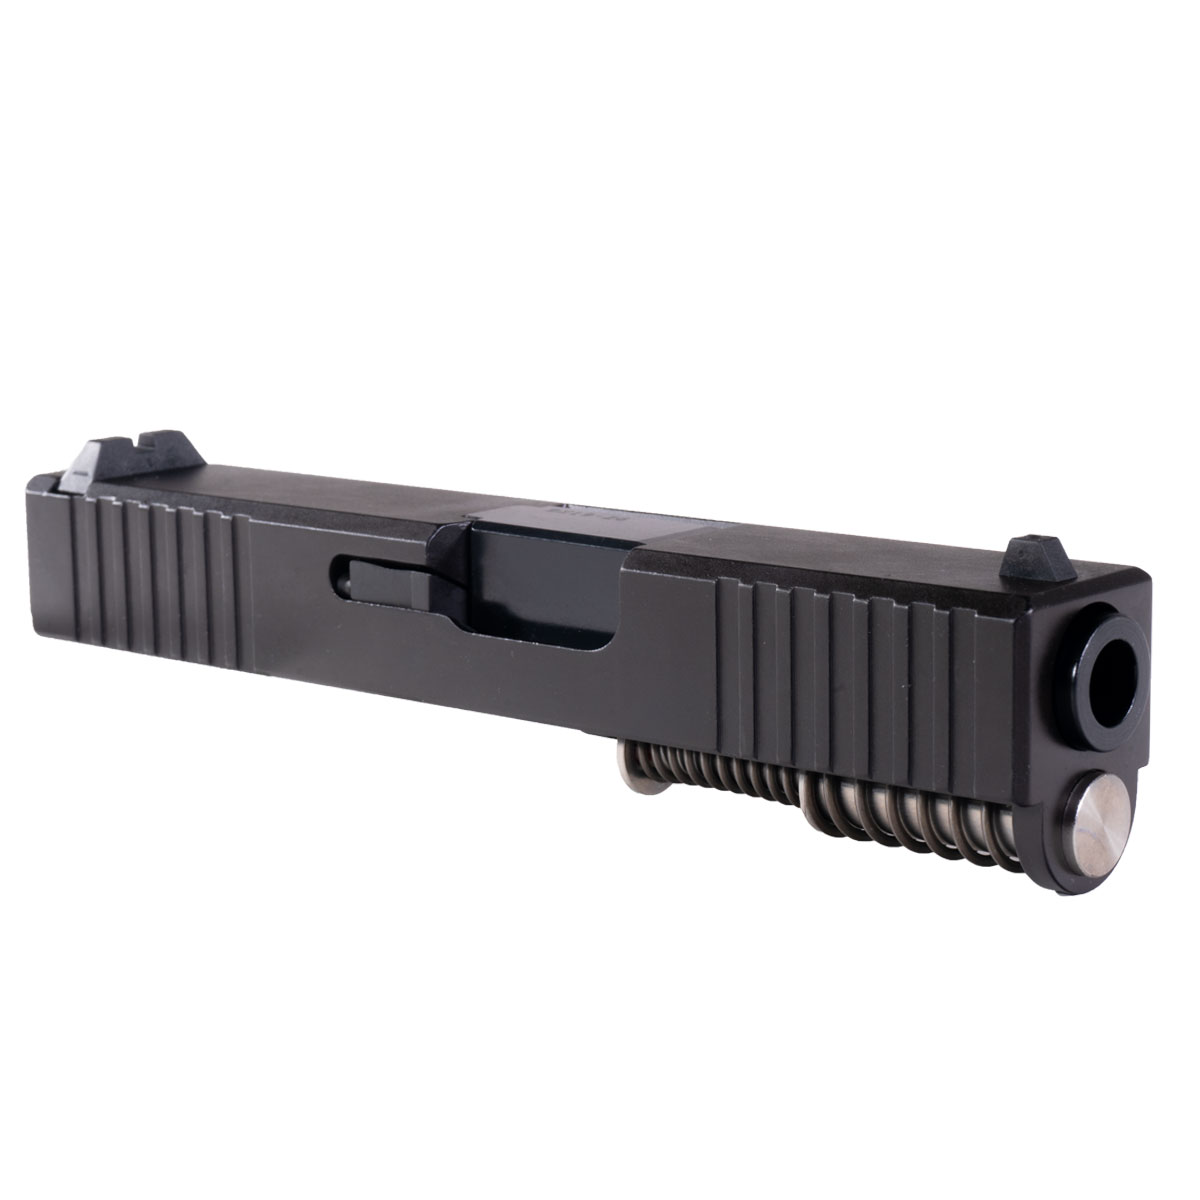 DD 'Burly' 9mm Complete Slide Kit - Glock 26 Gen 1-2 Compatible